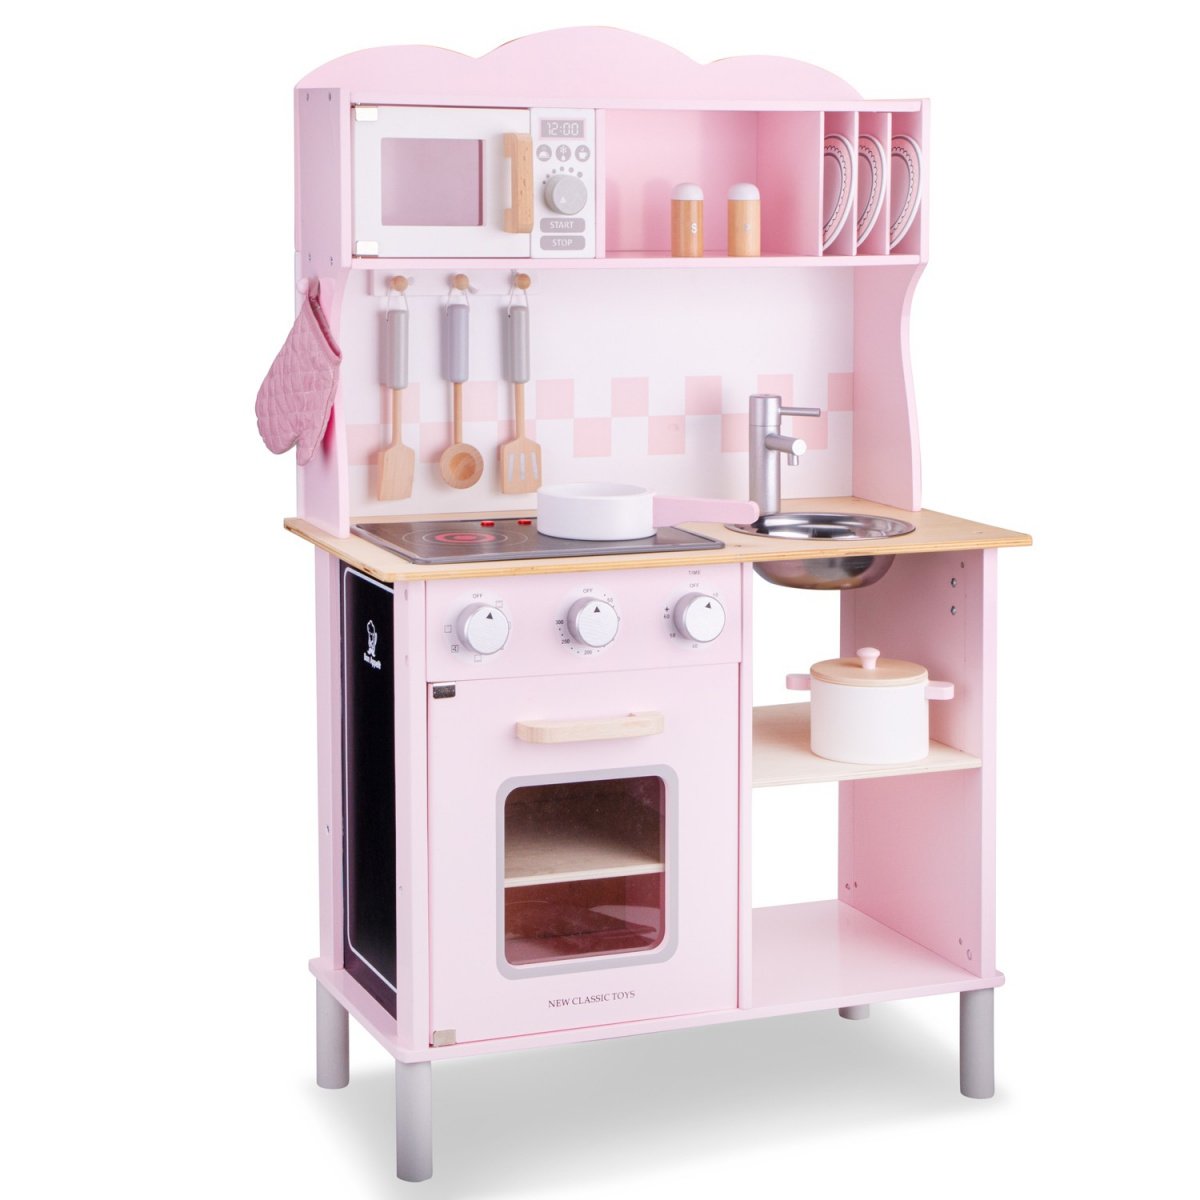 Игровой набор New Classic Toys Кухня Modern, розовый (11067) - фото 1